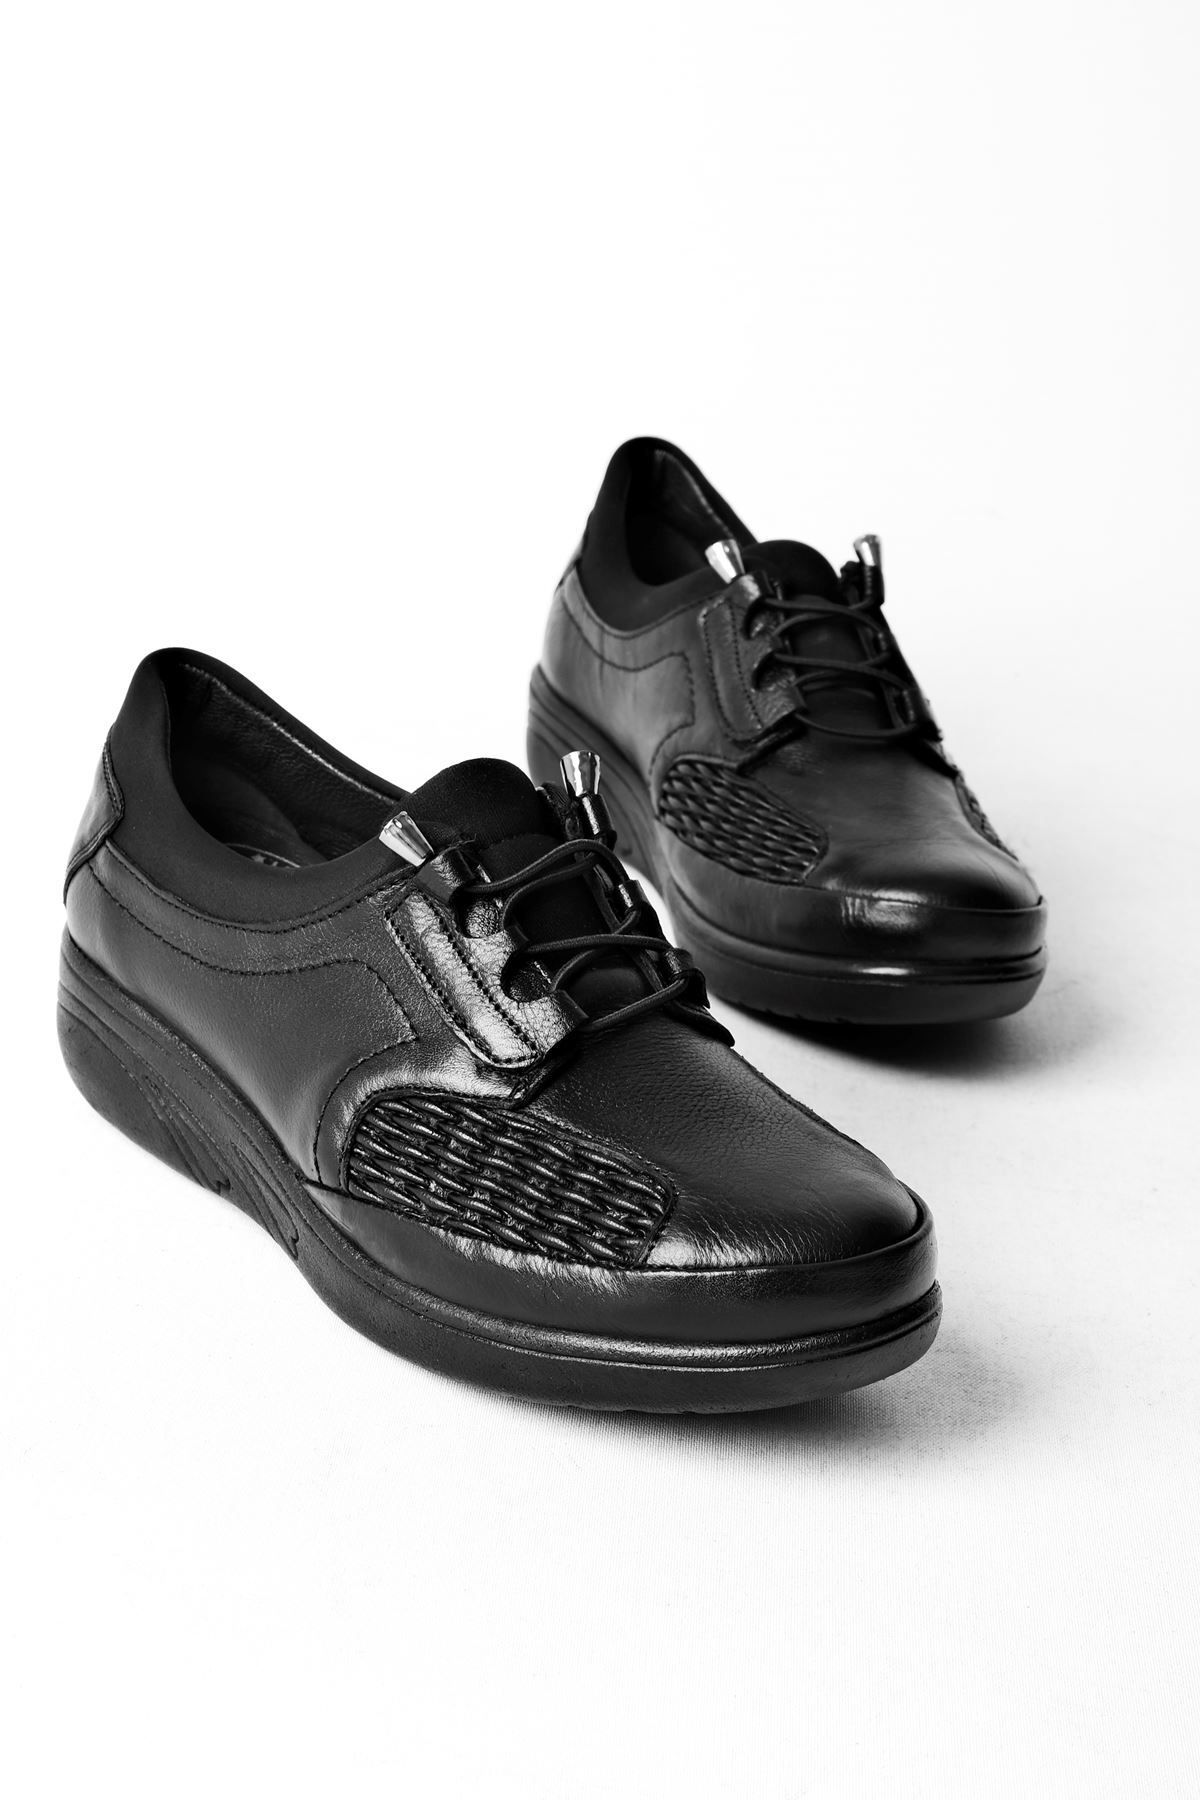 LAL SHOES & BAGS Crash Süs Bağcık Hakiki Deri Kadın Günlük Ayakkabı-siyah